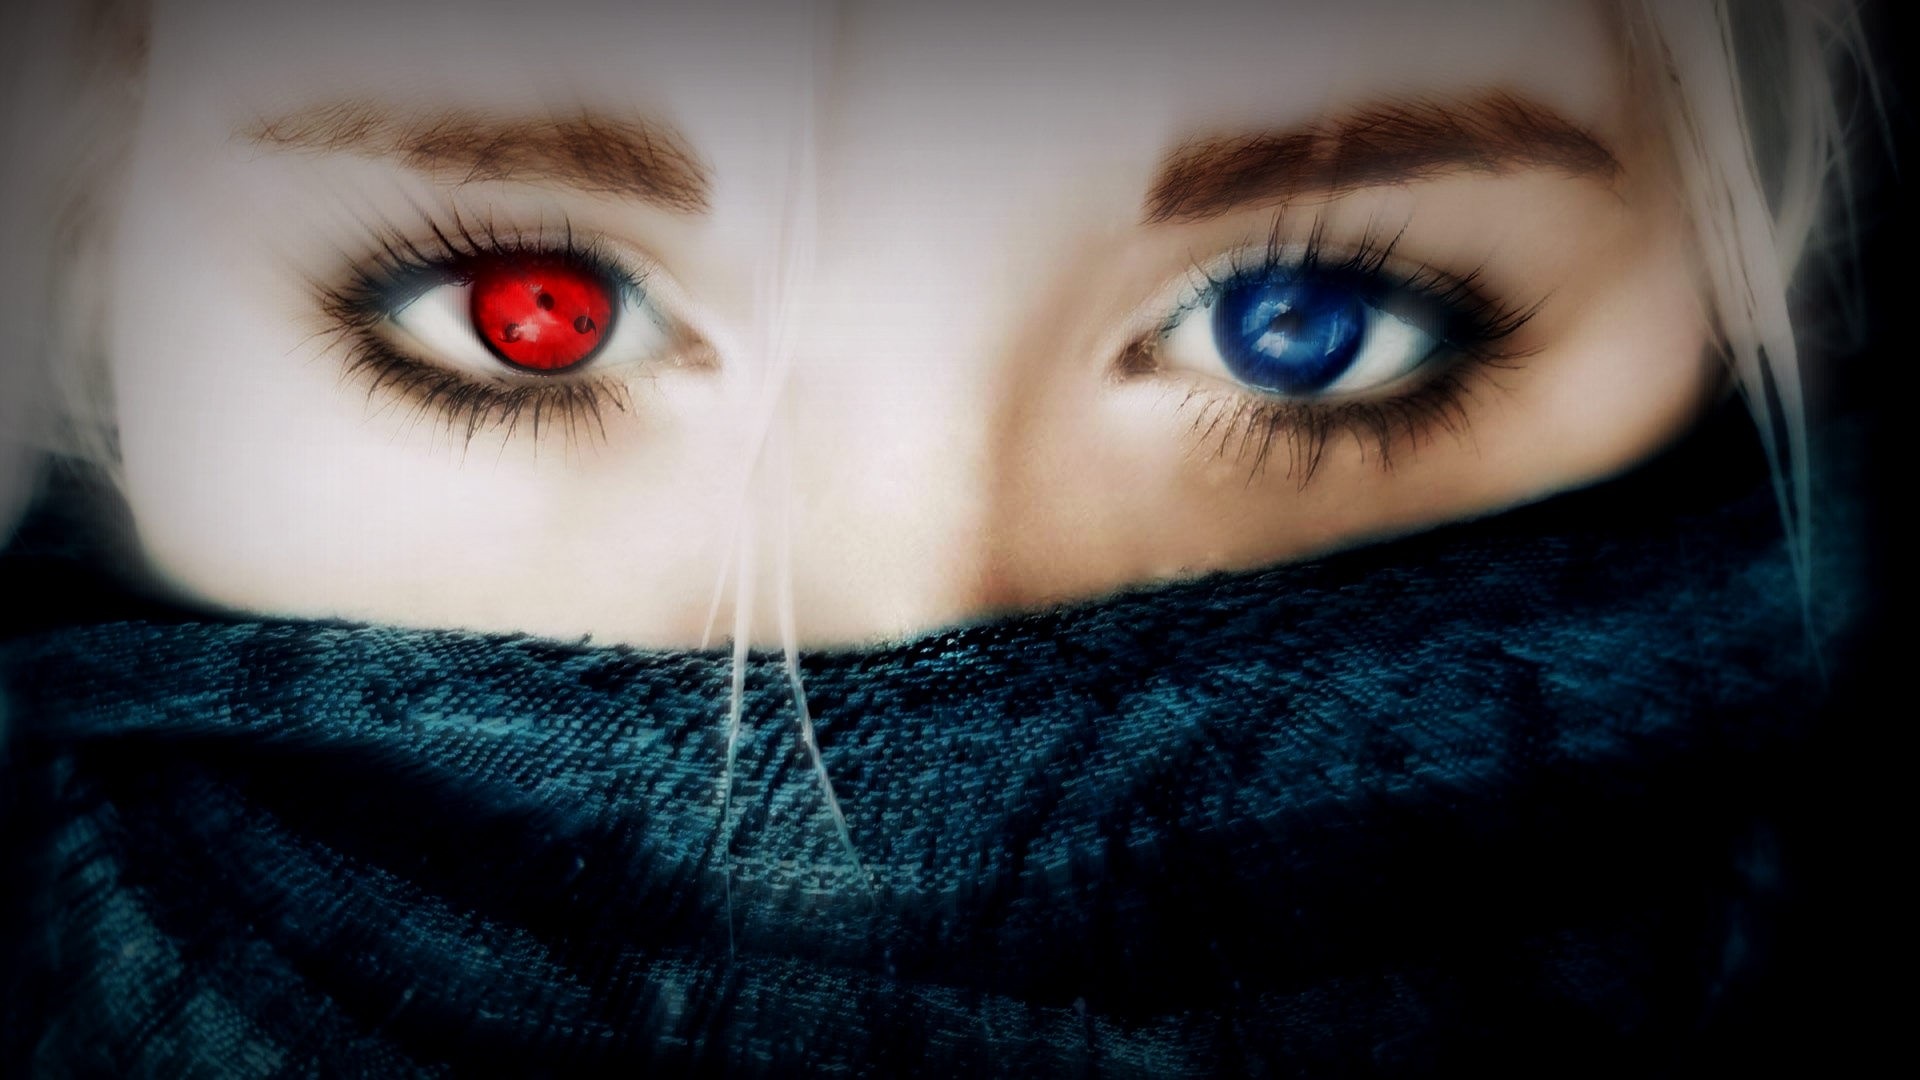 You have beautiful eyes. Фото глаза. Красно синие глаза. Темно синие глаза. Разноцветные глаза.